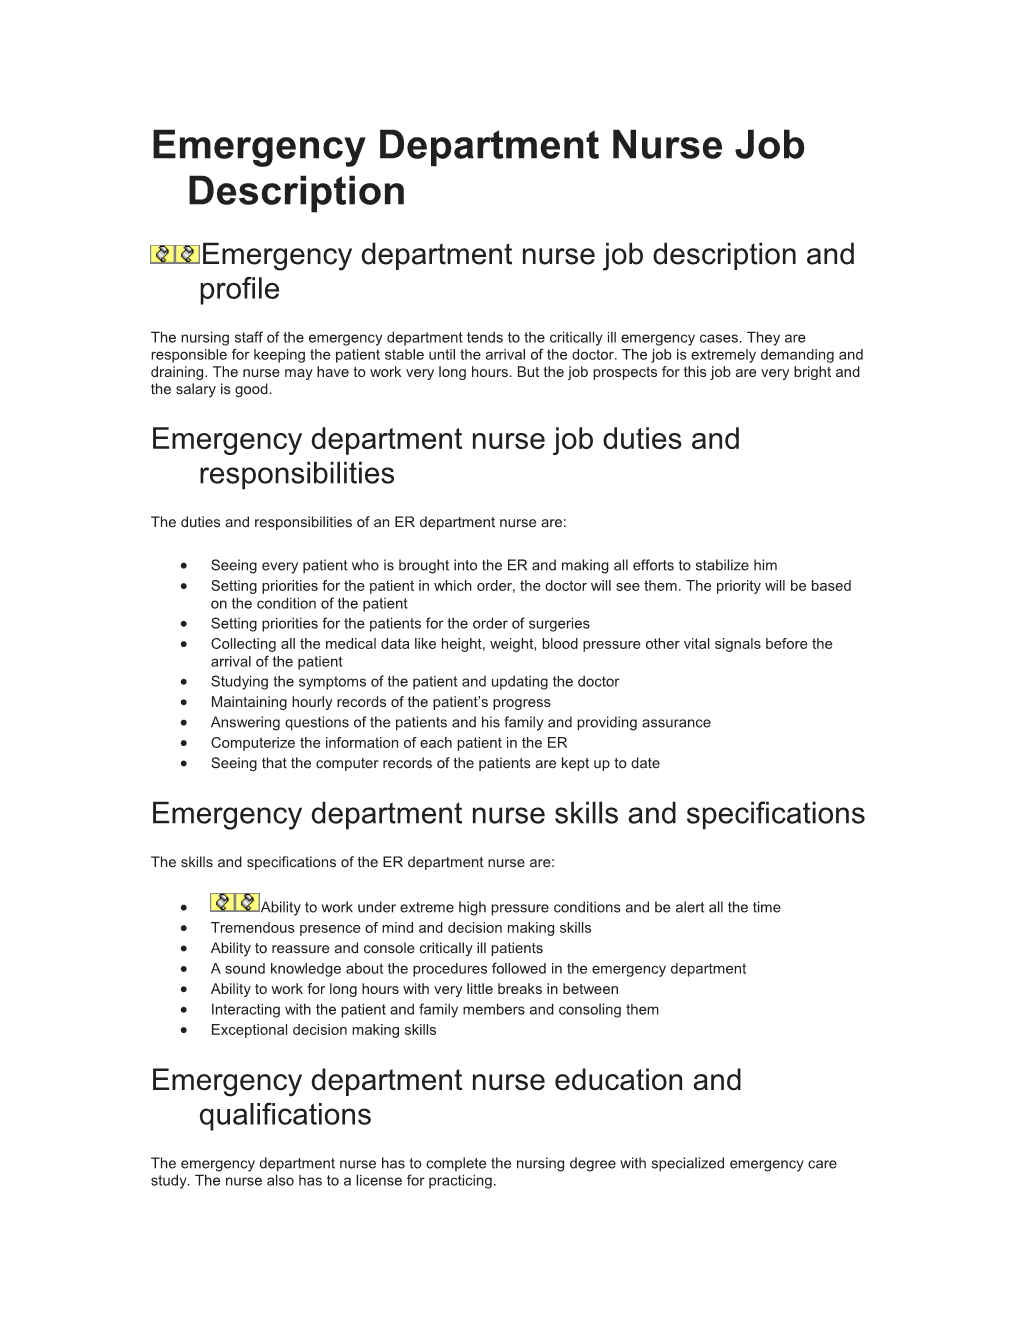 Emergency Department Nurse Job Description